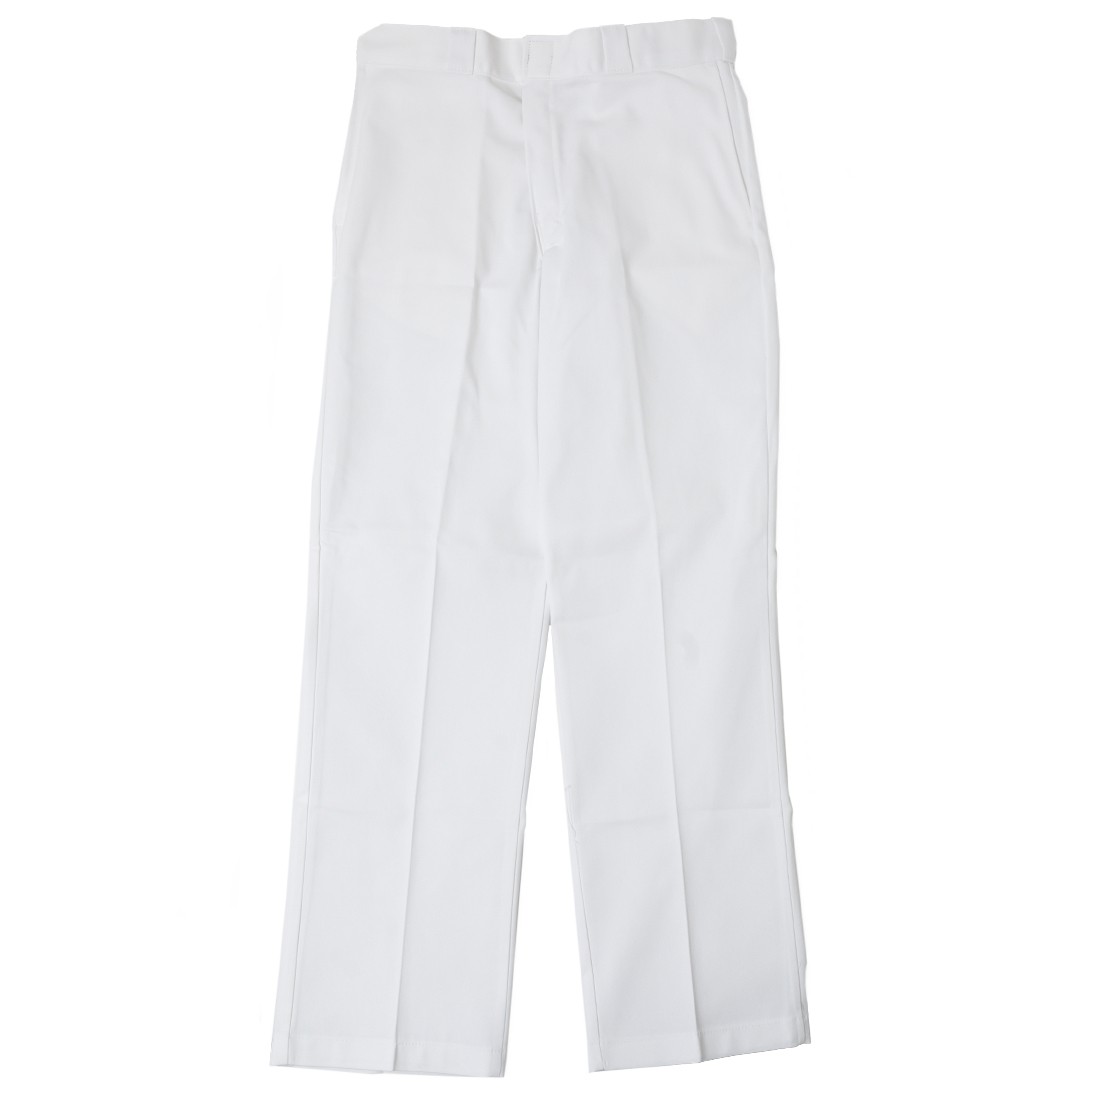 Dickies Men Original Fit 874 Work Pants (white)